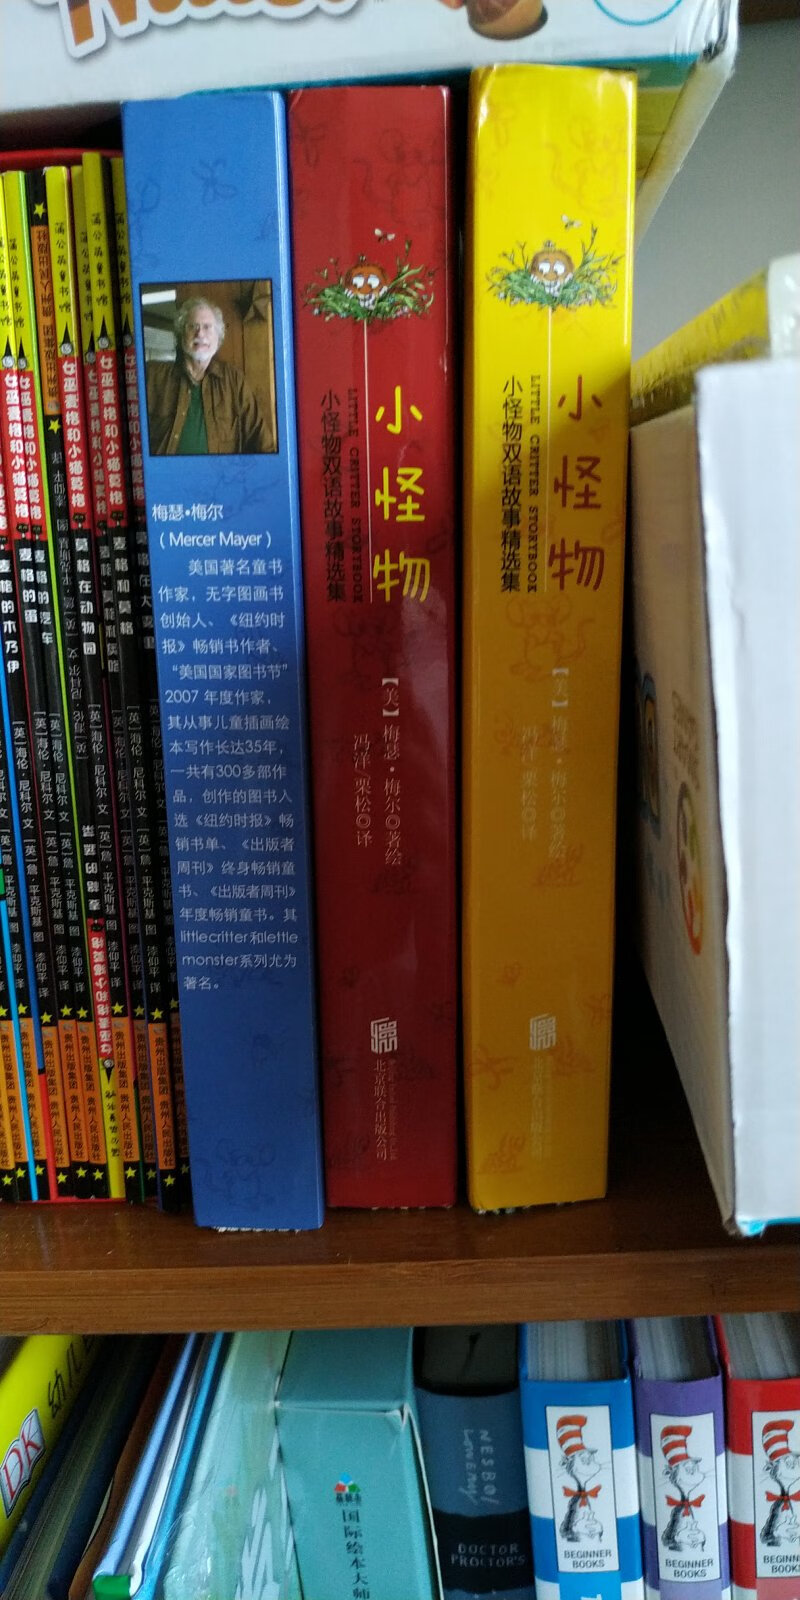 很好的双语绘本系列，中文翻译在最后两页，适合孩子看，书香节购买，很实惠，很多本